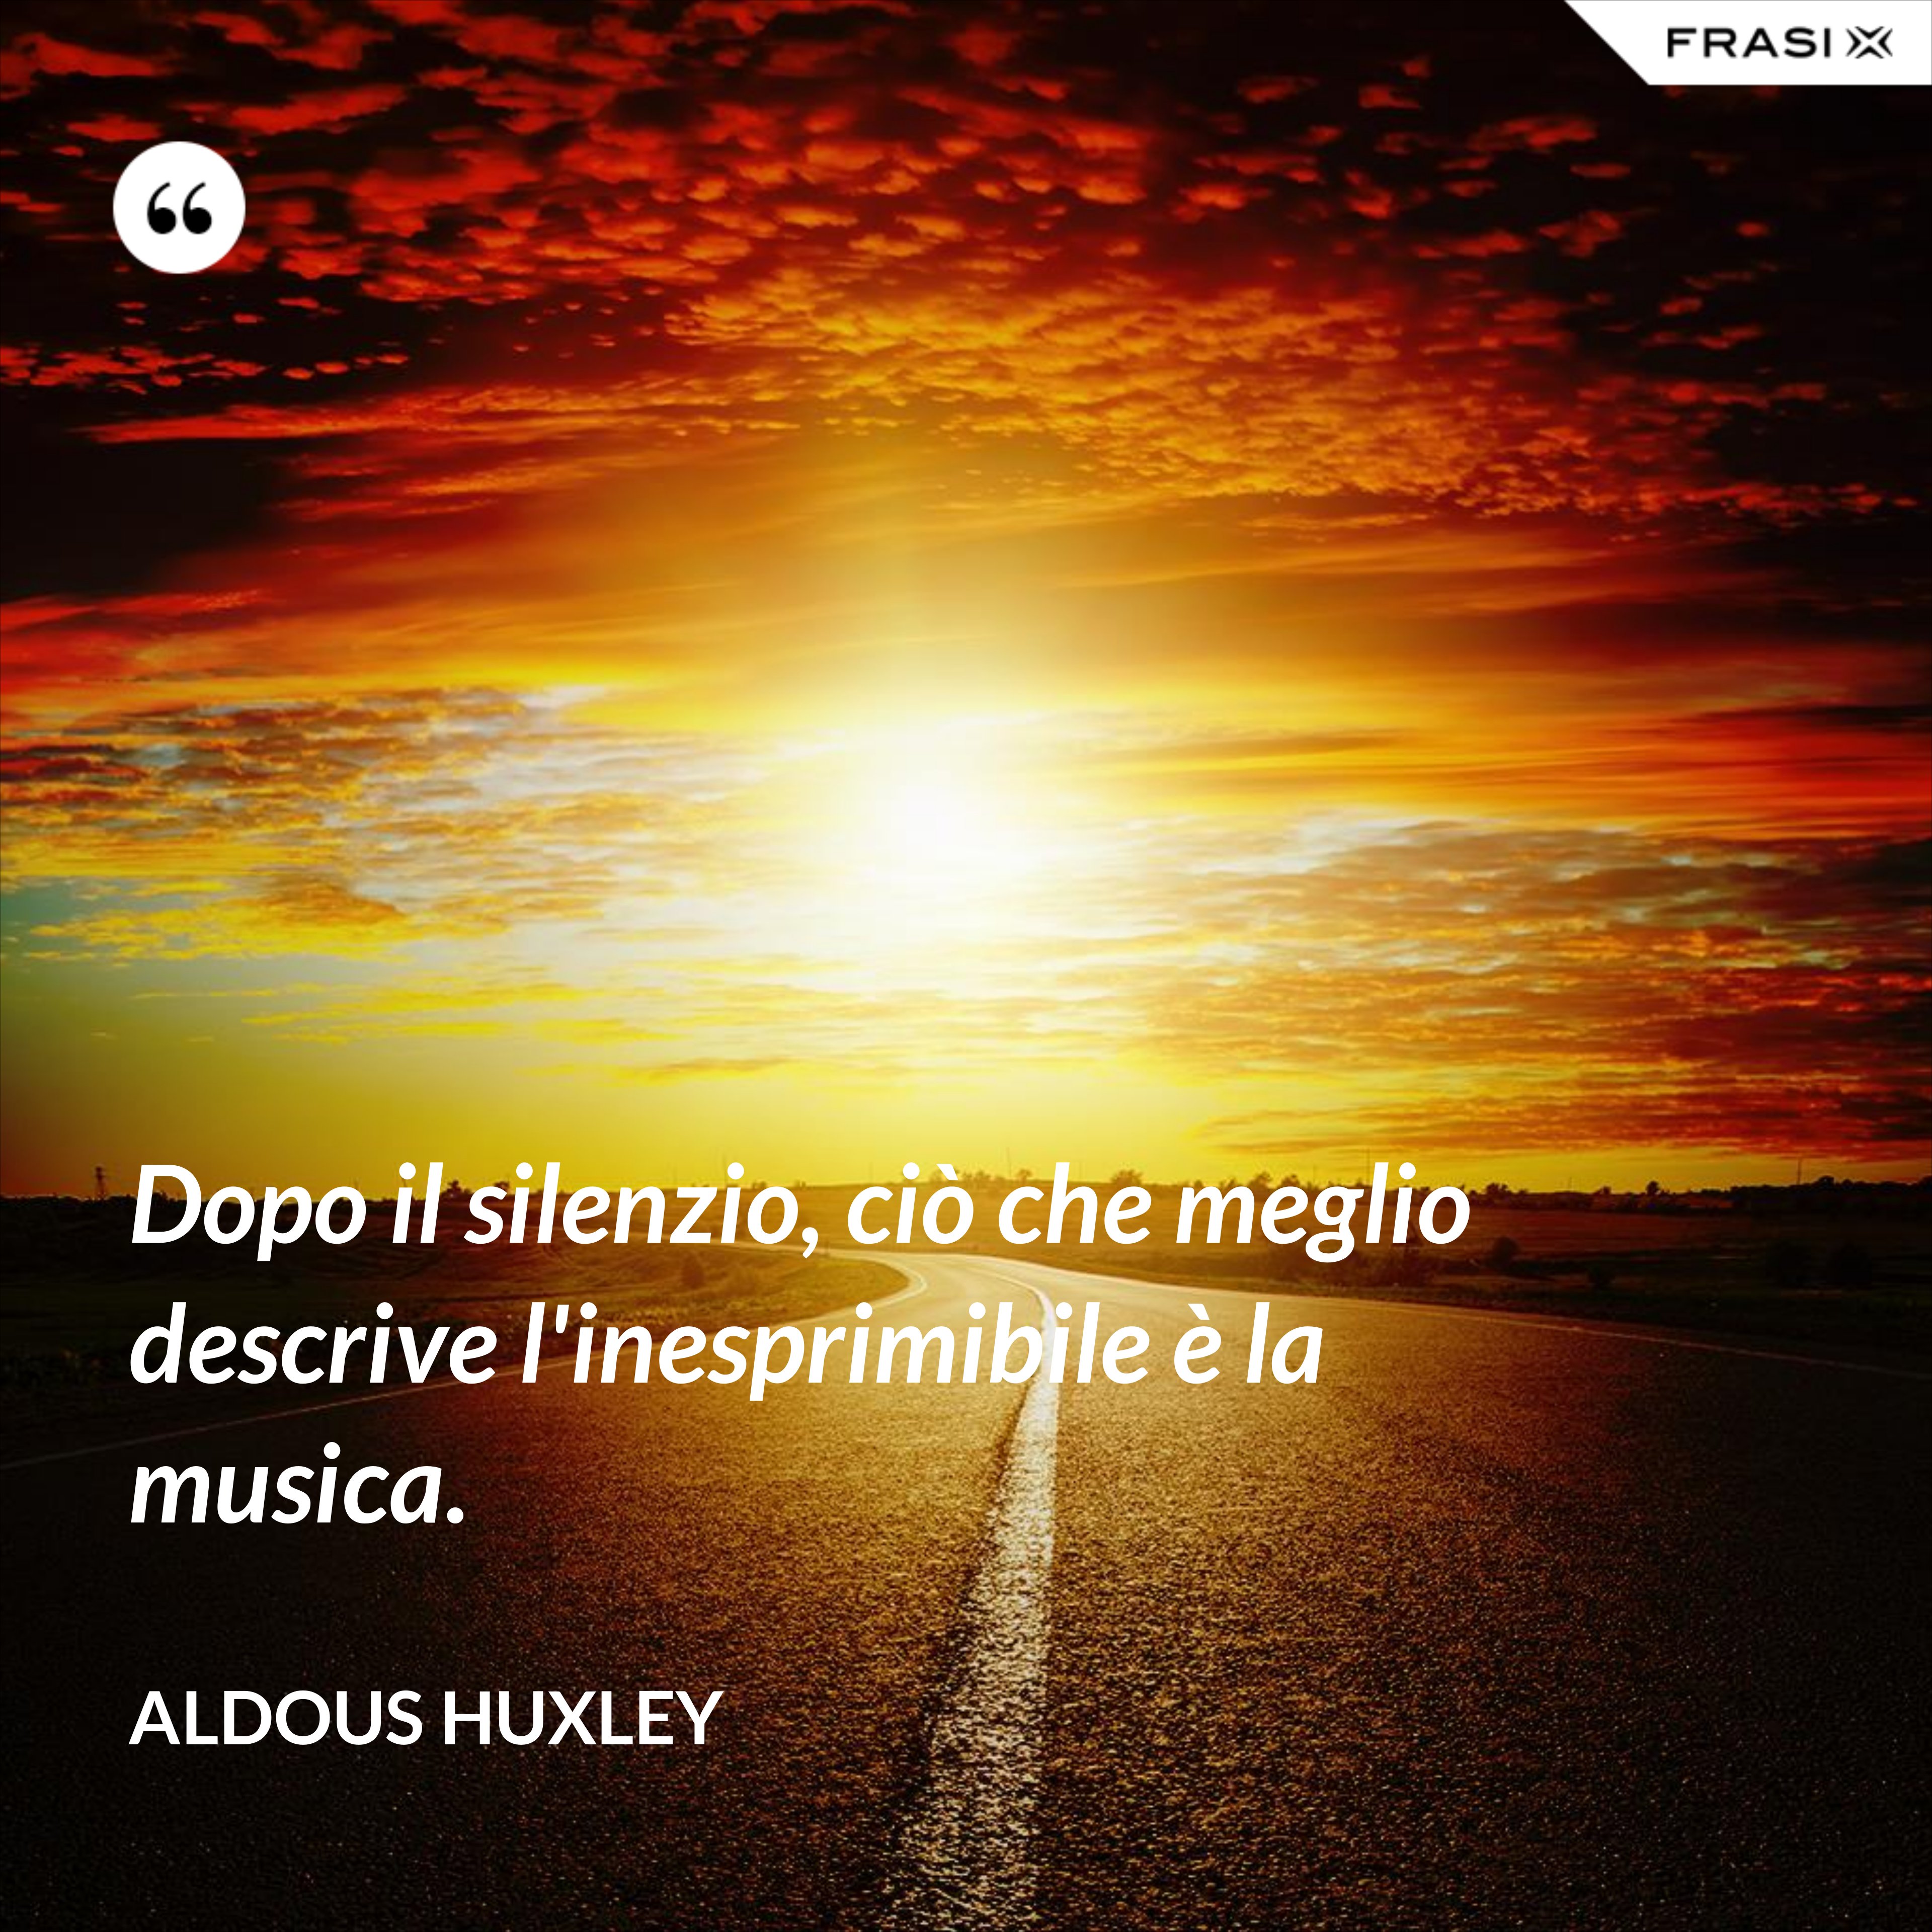 Dopo il silenzio, ciò che meglio descrive l'inesprimibile è la musica. - Aldous Huxley